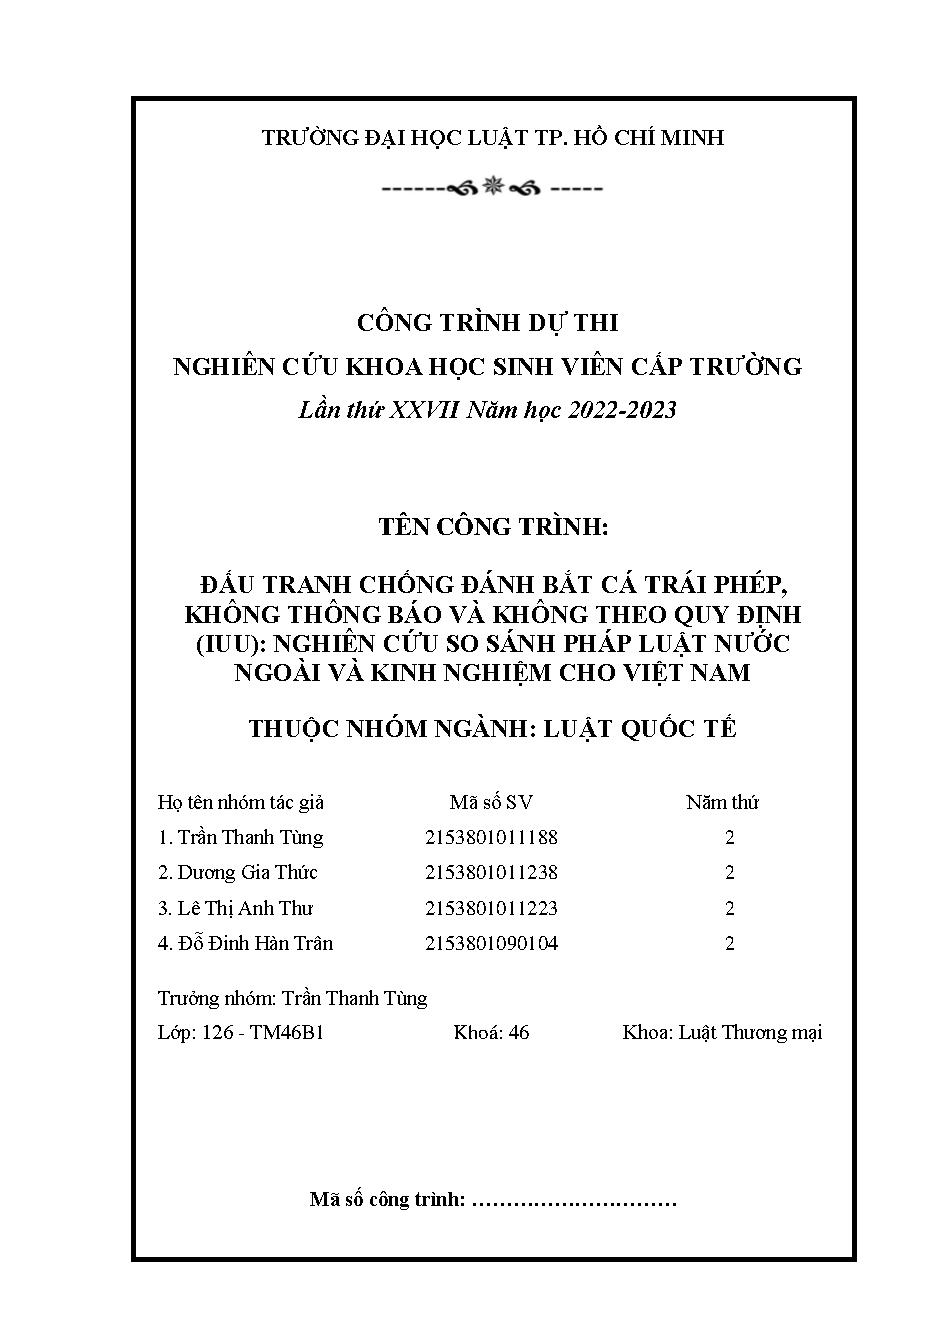 Đấu tranh chống đánh bắt cá trái phép, không thông báo và không theo quy định (IUU): Nghiên cứu so sánh pháp luật nước ngoài và kinh nghiệm cho Việt Nam